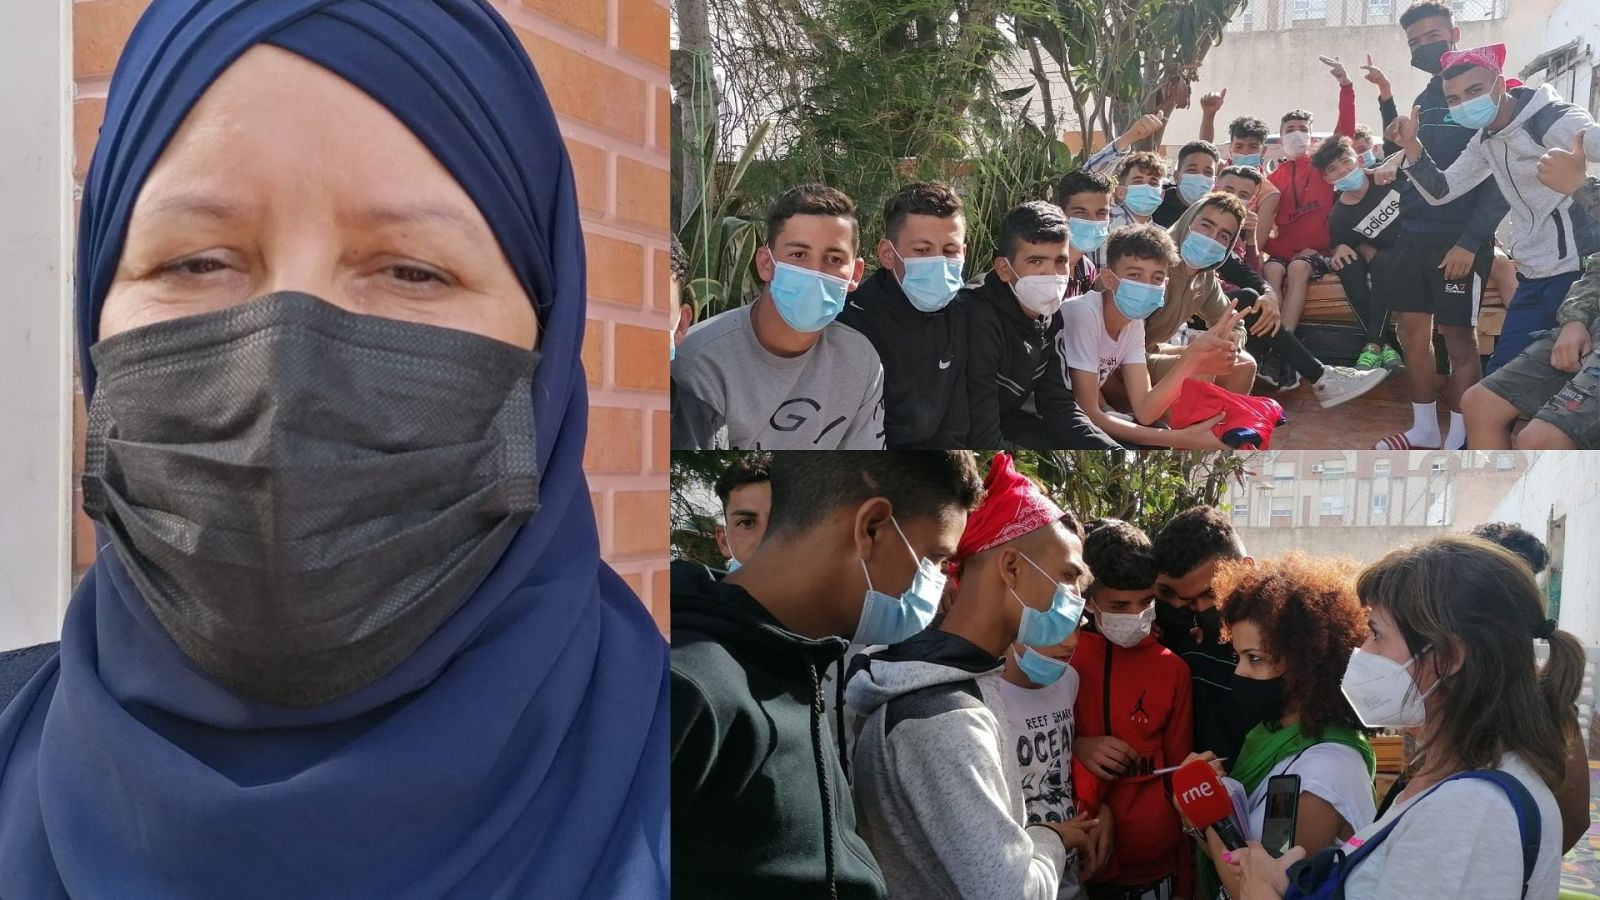 14 horas Fin de Semana - La solidaridad de los vecinos en Ceuta: Sabah da cobijo a una veintena de adolescentes - Escuchar ahora